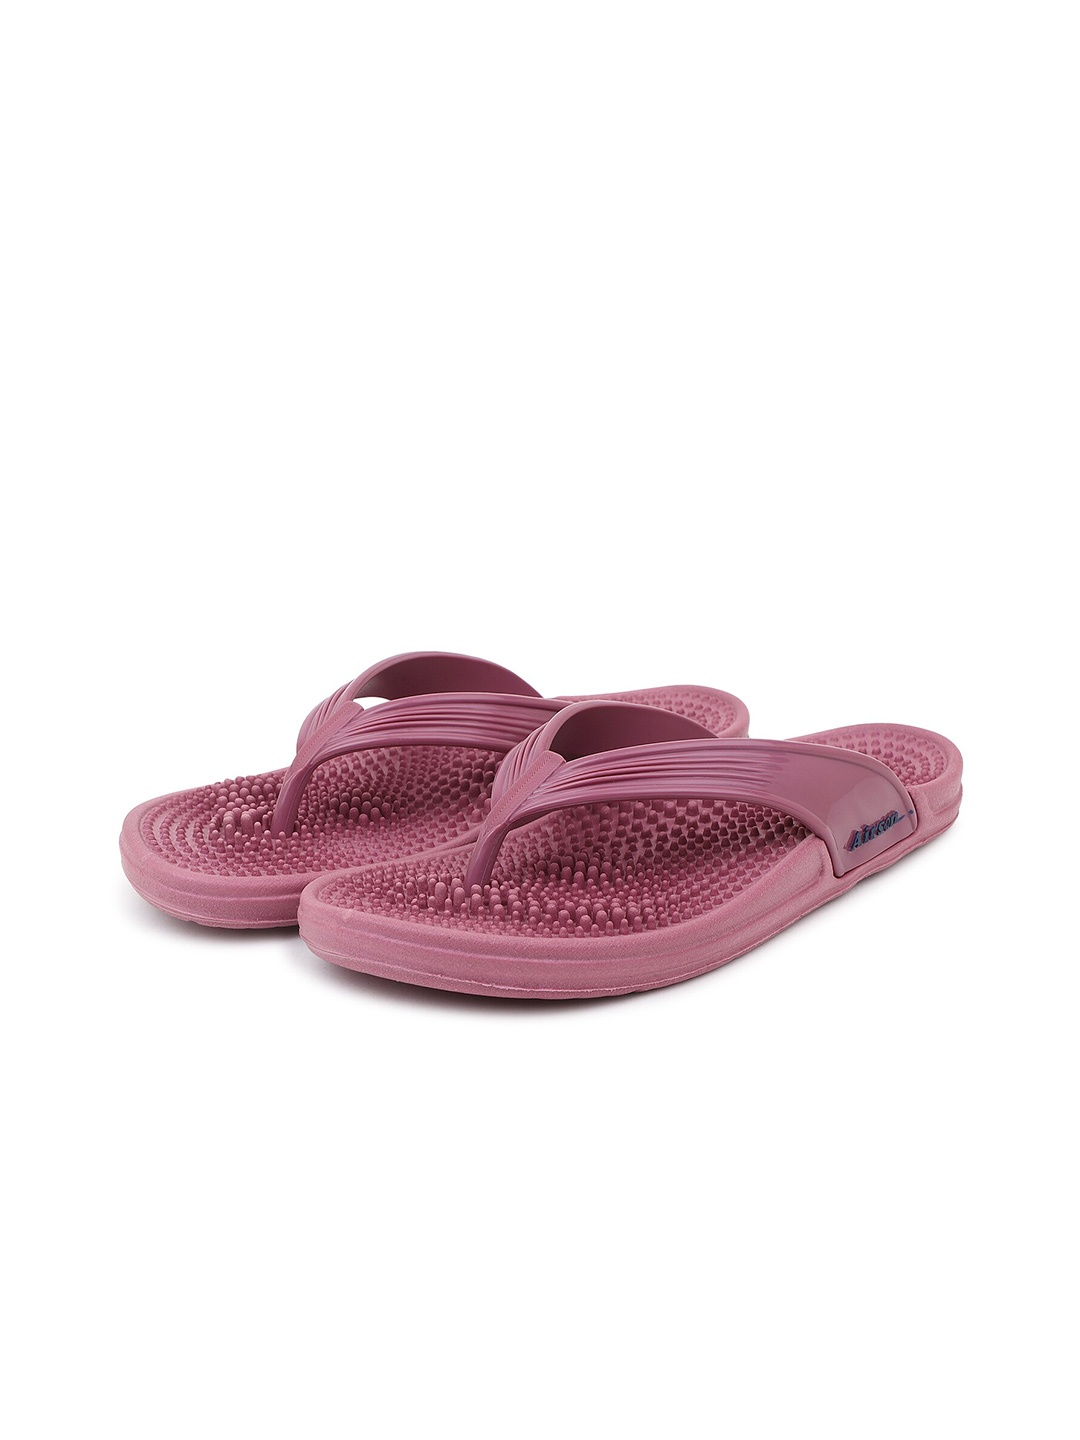 

Airson Women Textured Thong Flip-Flops, Pink